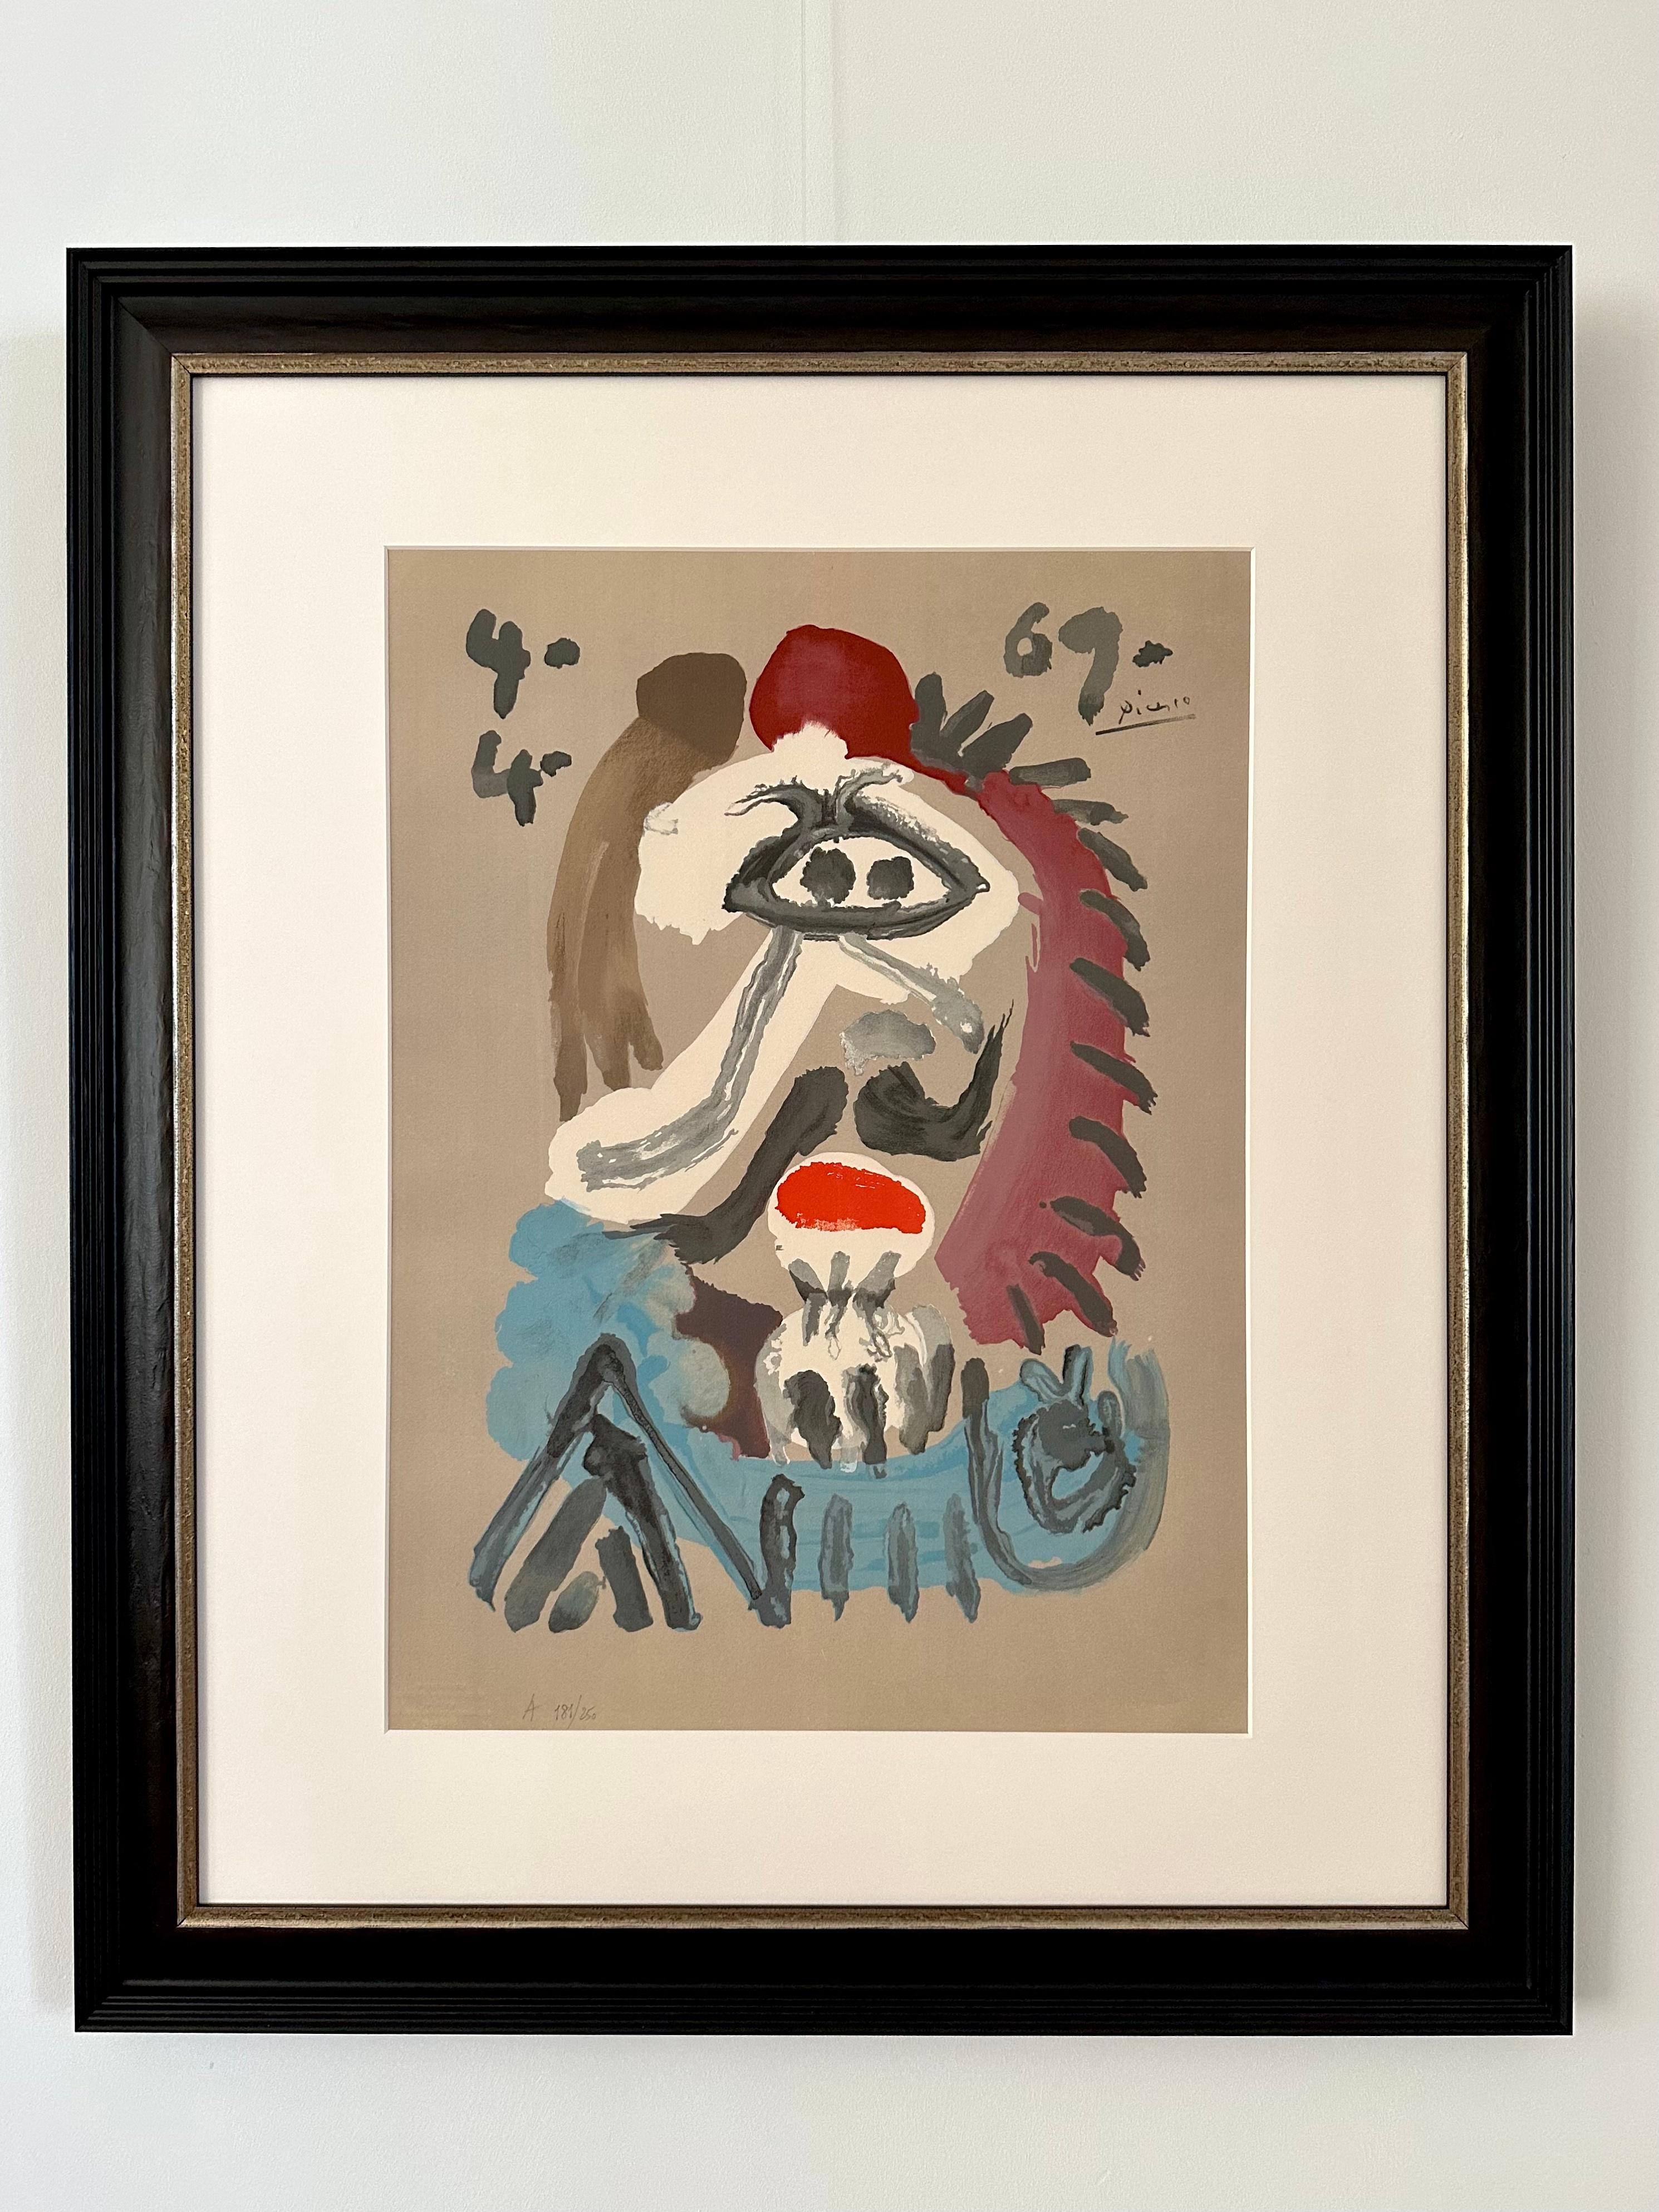 Portraits imaginaires 4.4.69 - Moderne Print par Pablo Picasso